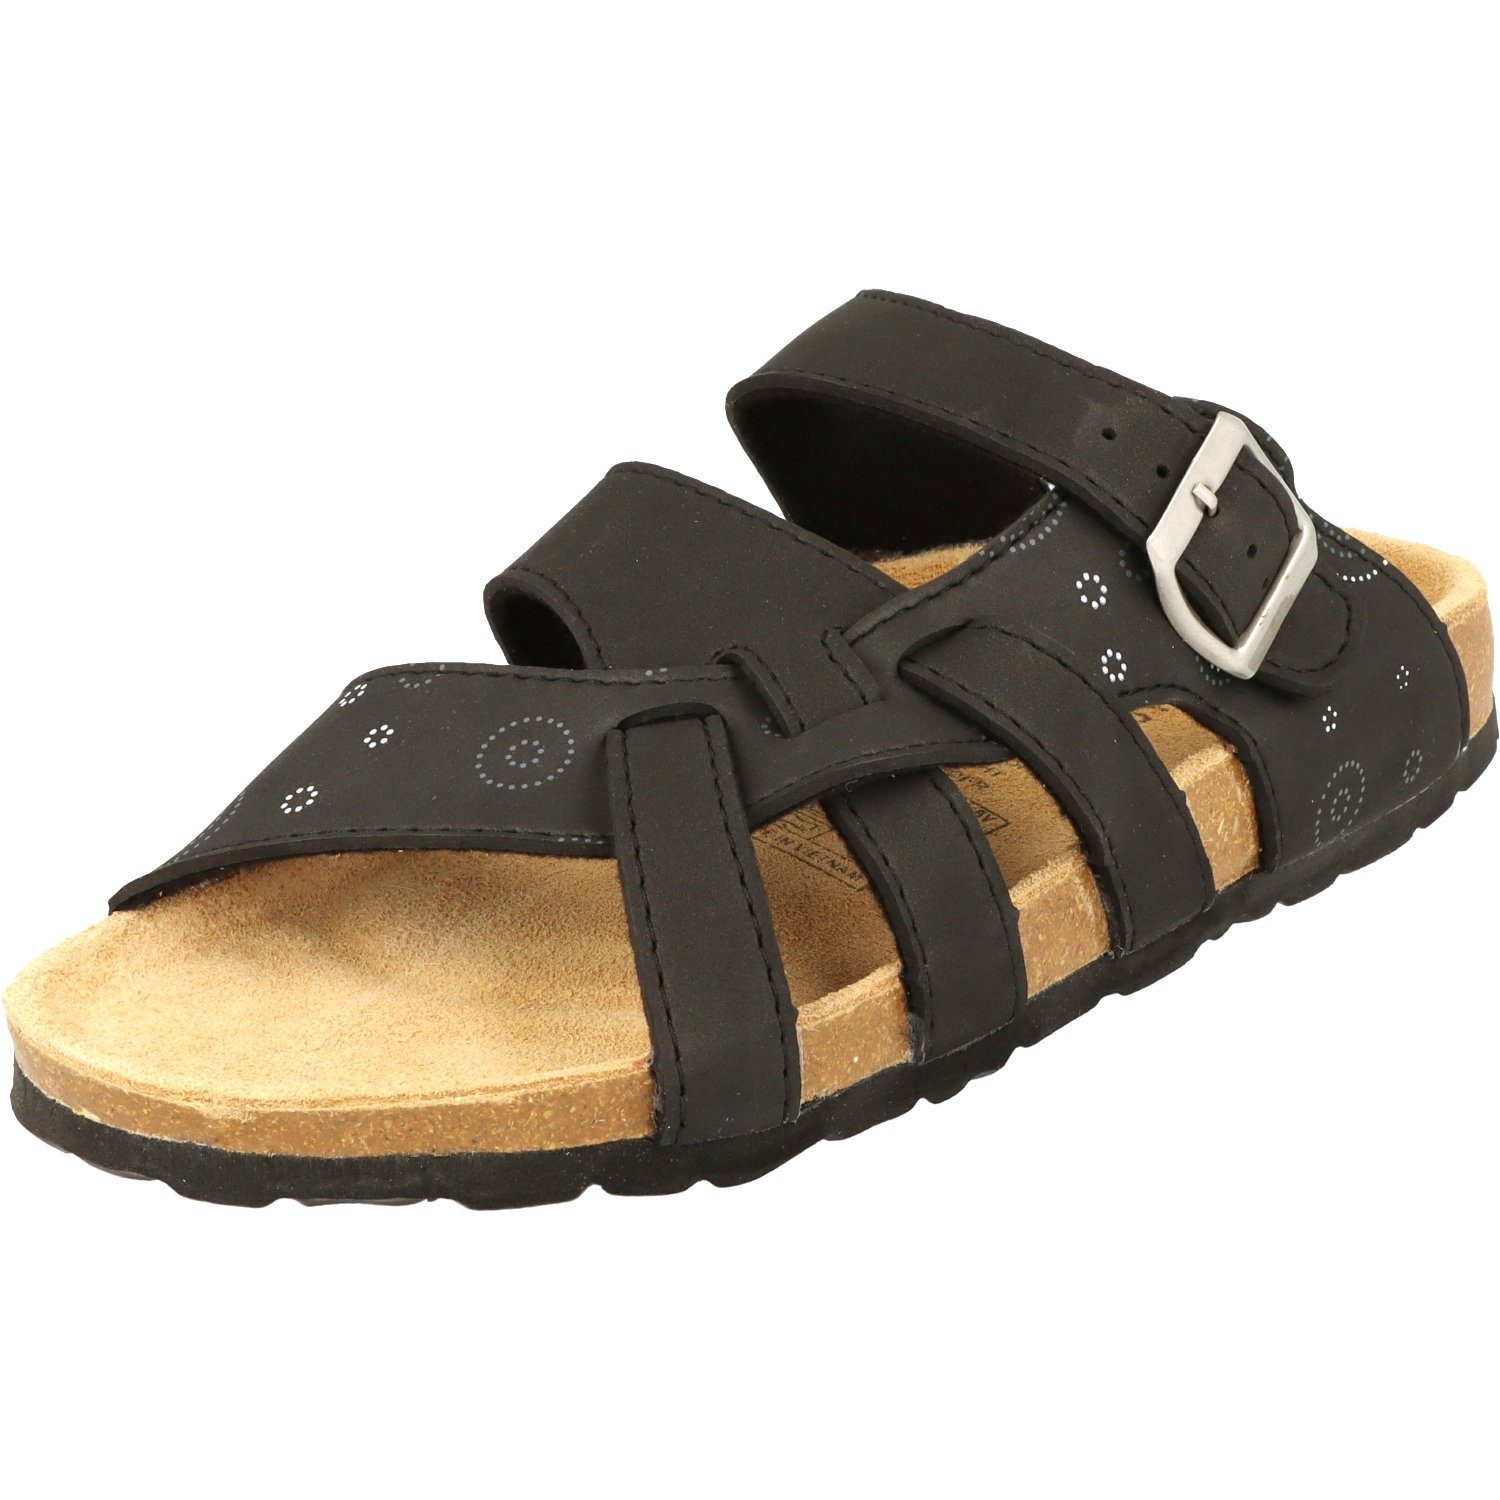 Cloxx Damen Schuhe T67913 Hausschuhe Sandale Lederfußbett Pantolette Schwarz